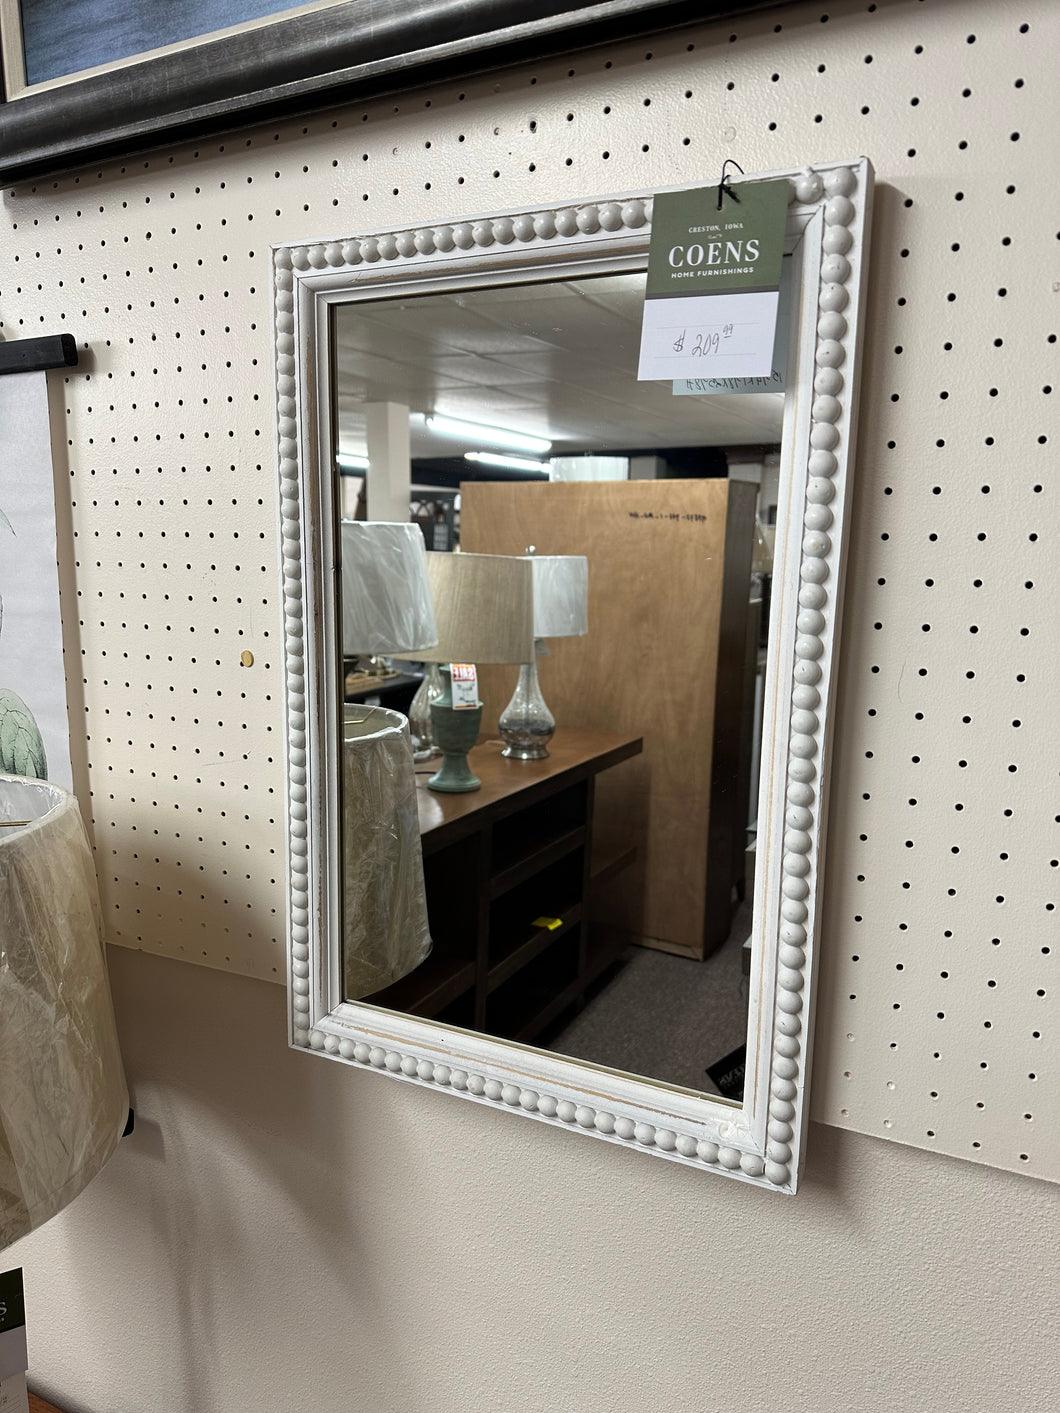 Whitewash Beaded Frame Wall Mirror by Ganz CB180146